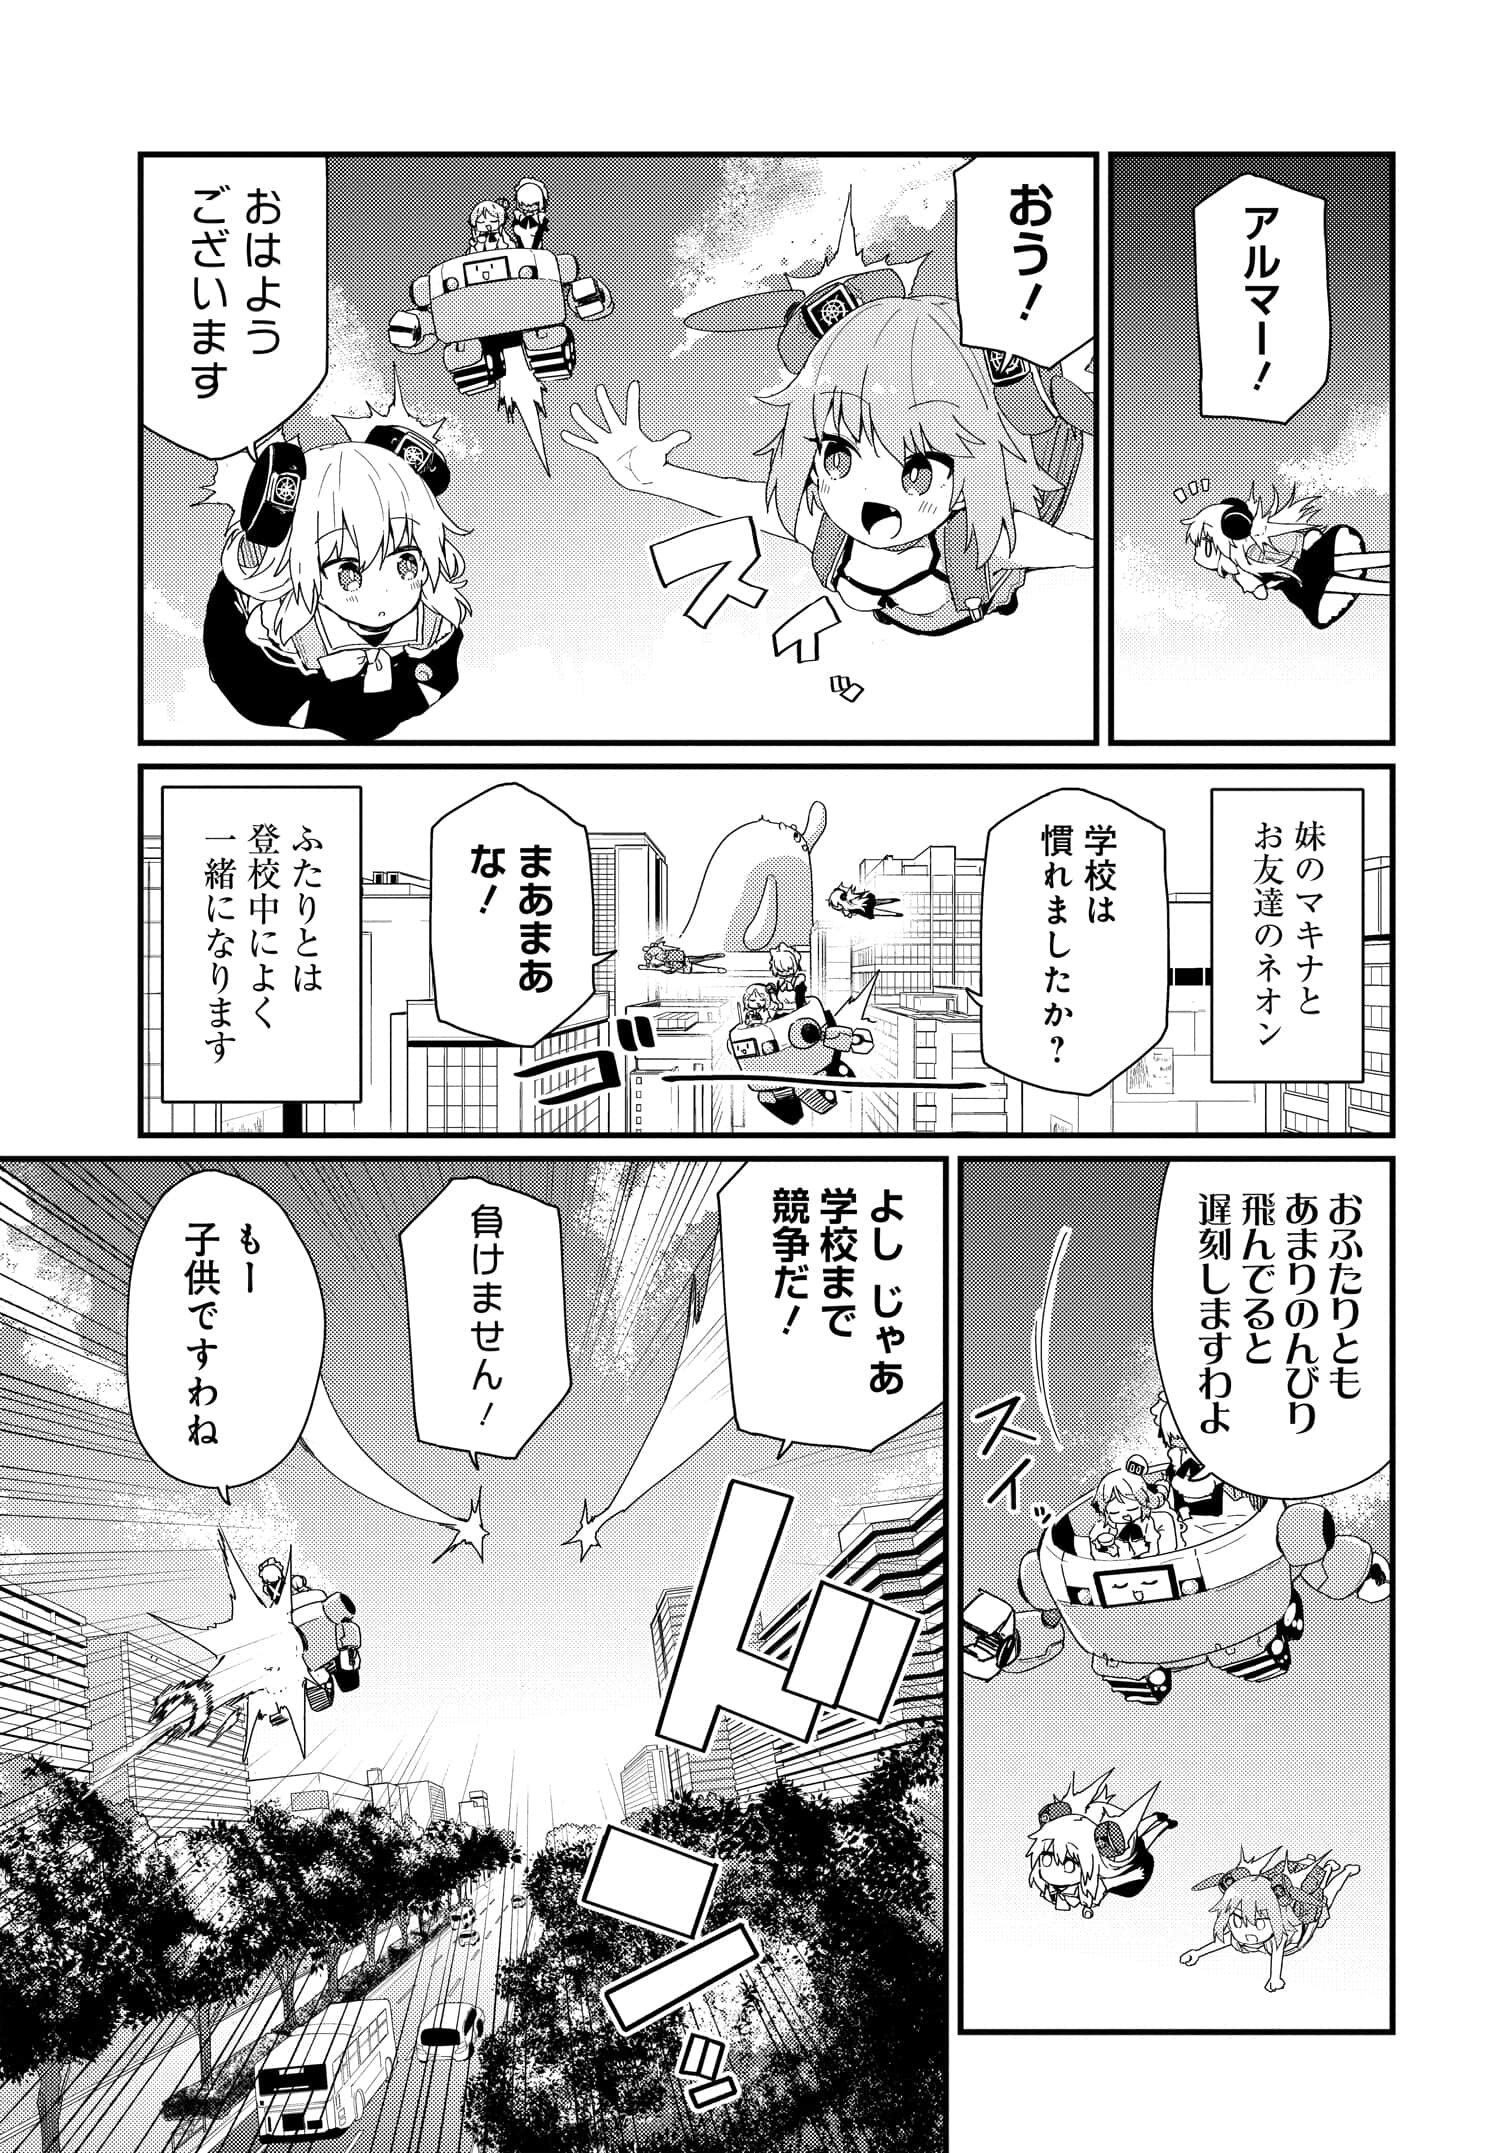 Alma-chan wa Kazoku ni Naritai Z - Chapter 1 - Page 5